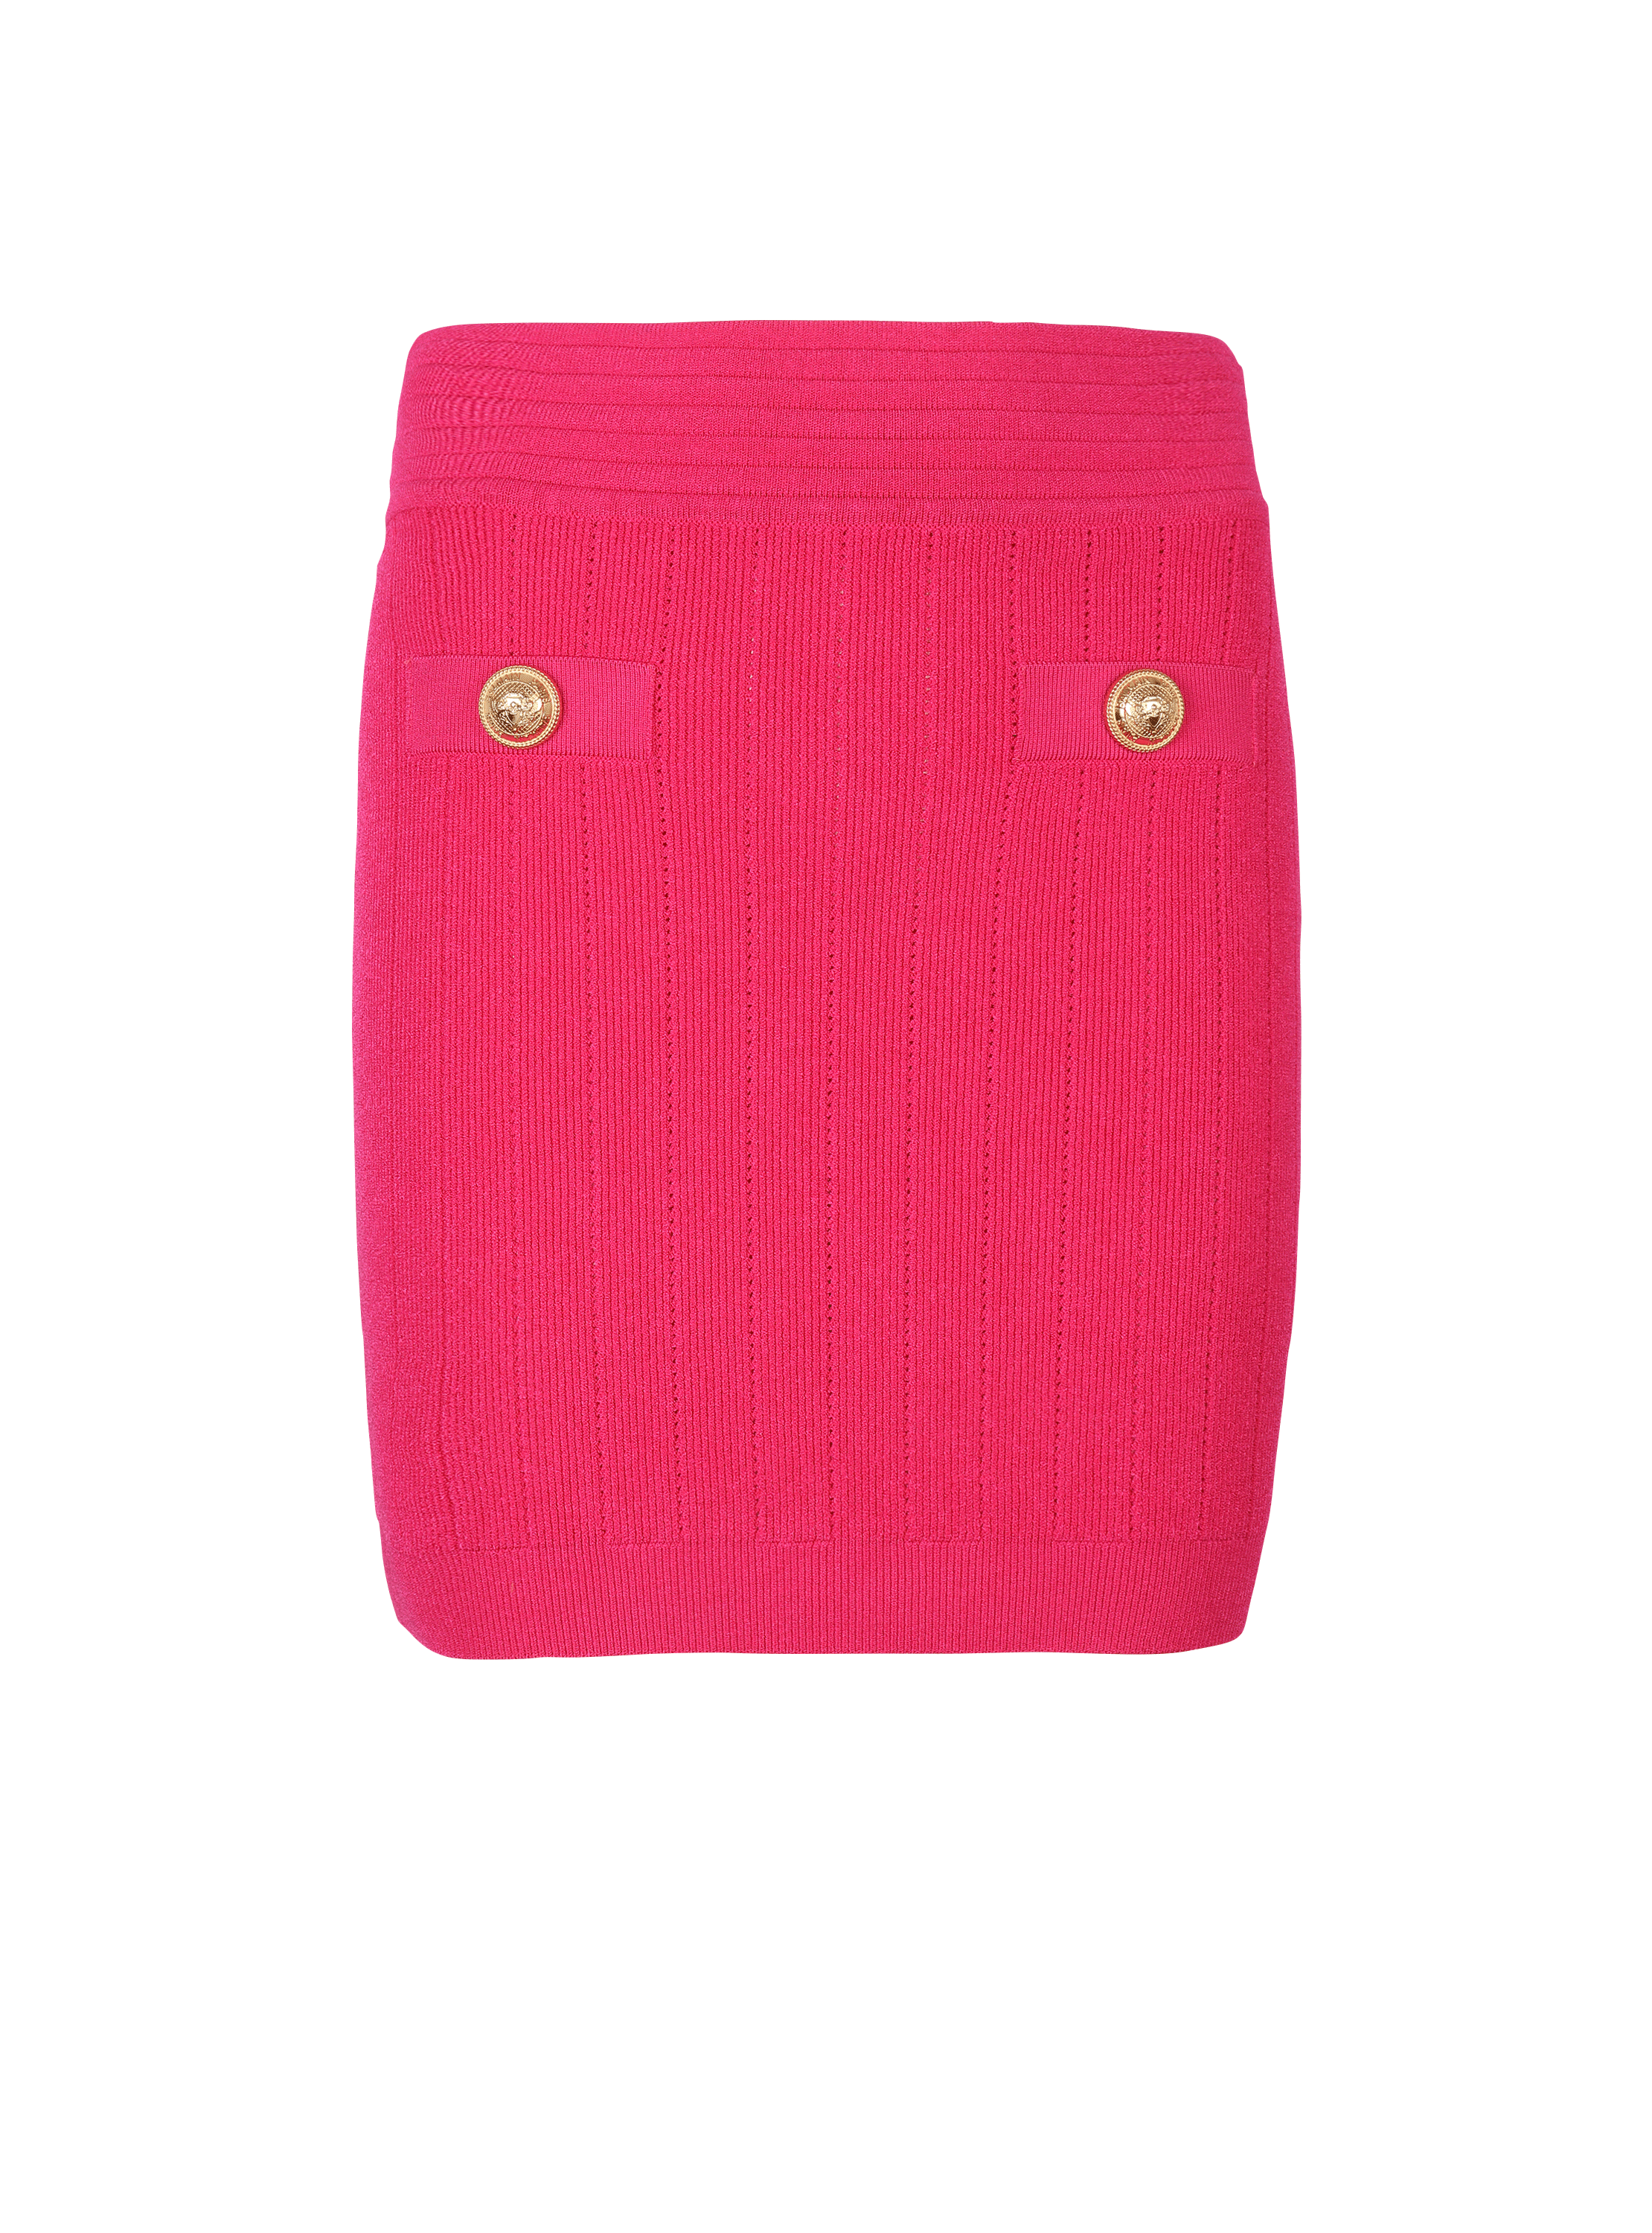 Short knit skirt, pink, hi-res